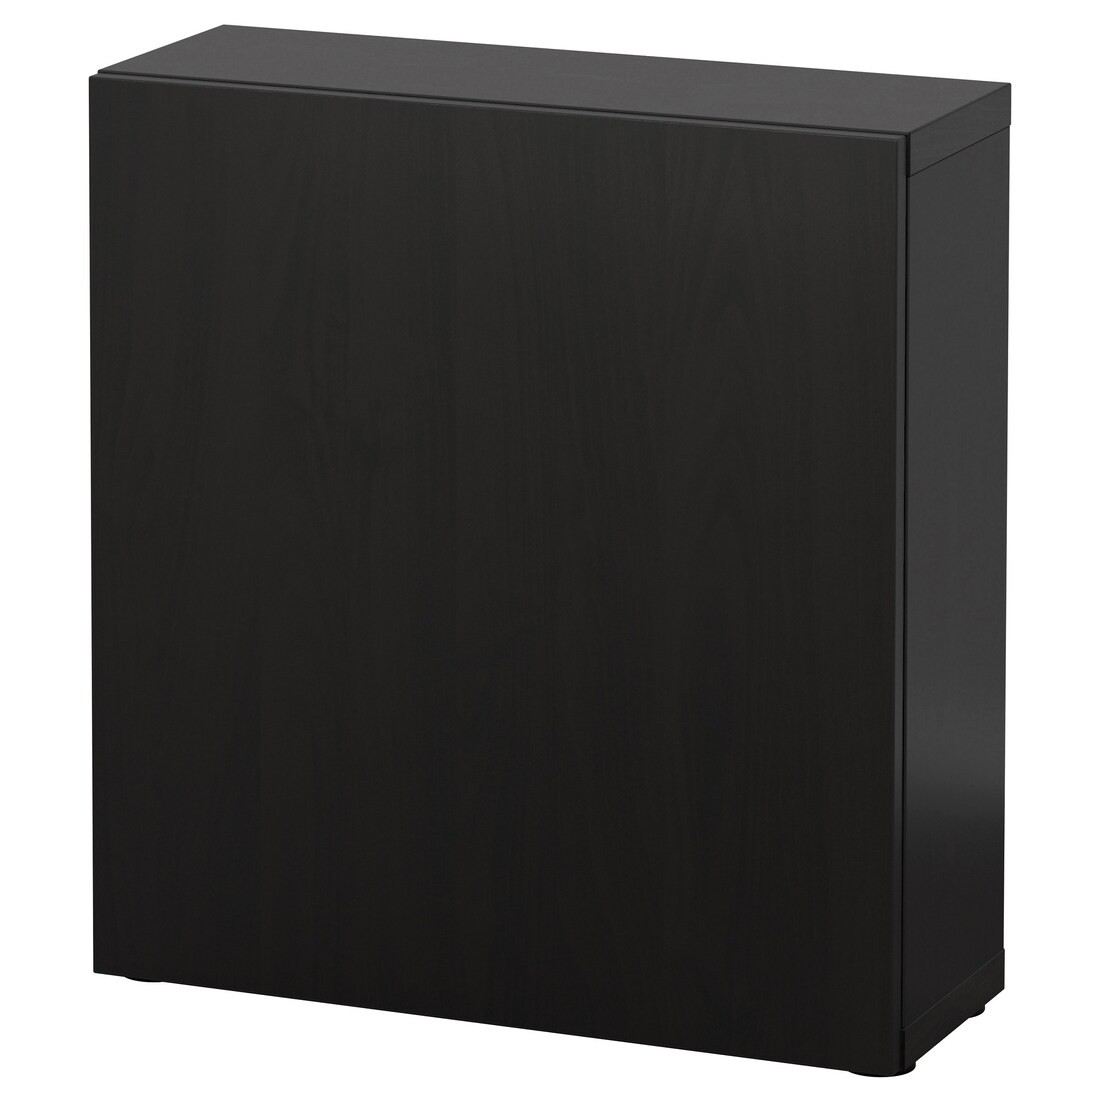 BESTÅ БЕСТО Шкаф с дверьми, черно-коричневый / Lappviken черно-коричневый, 60x22x64 см